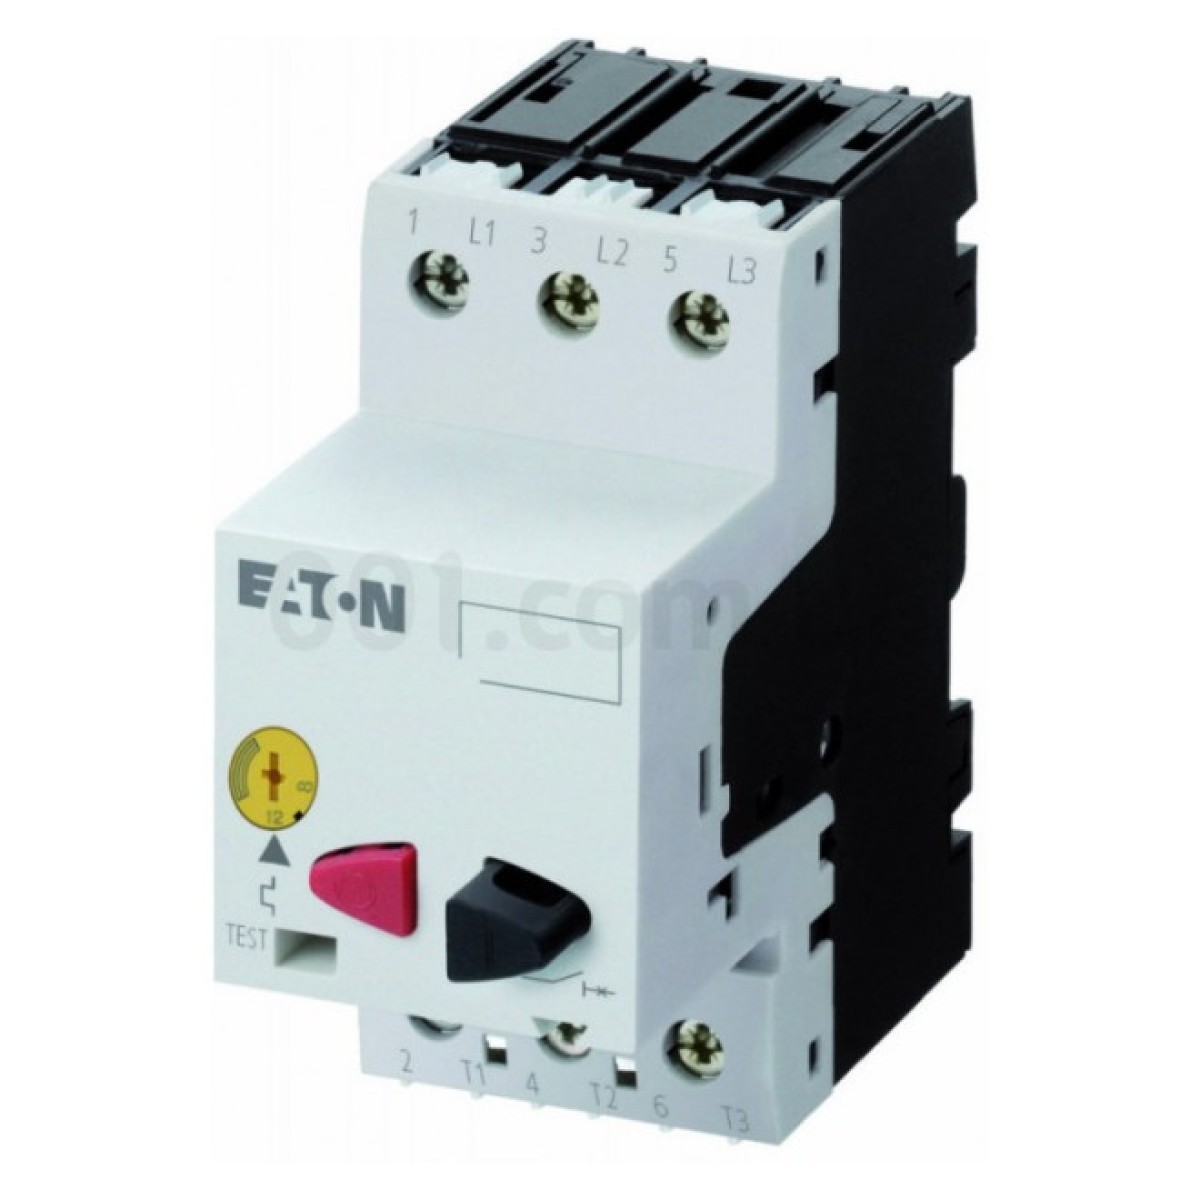 Автоматический выключатель защиты двигателя PKZM01-6,3 Ir=4...6,3А, Eaton (Moeller) 256_256.jpg